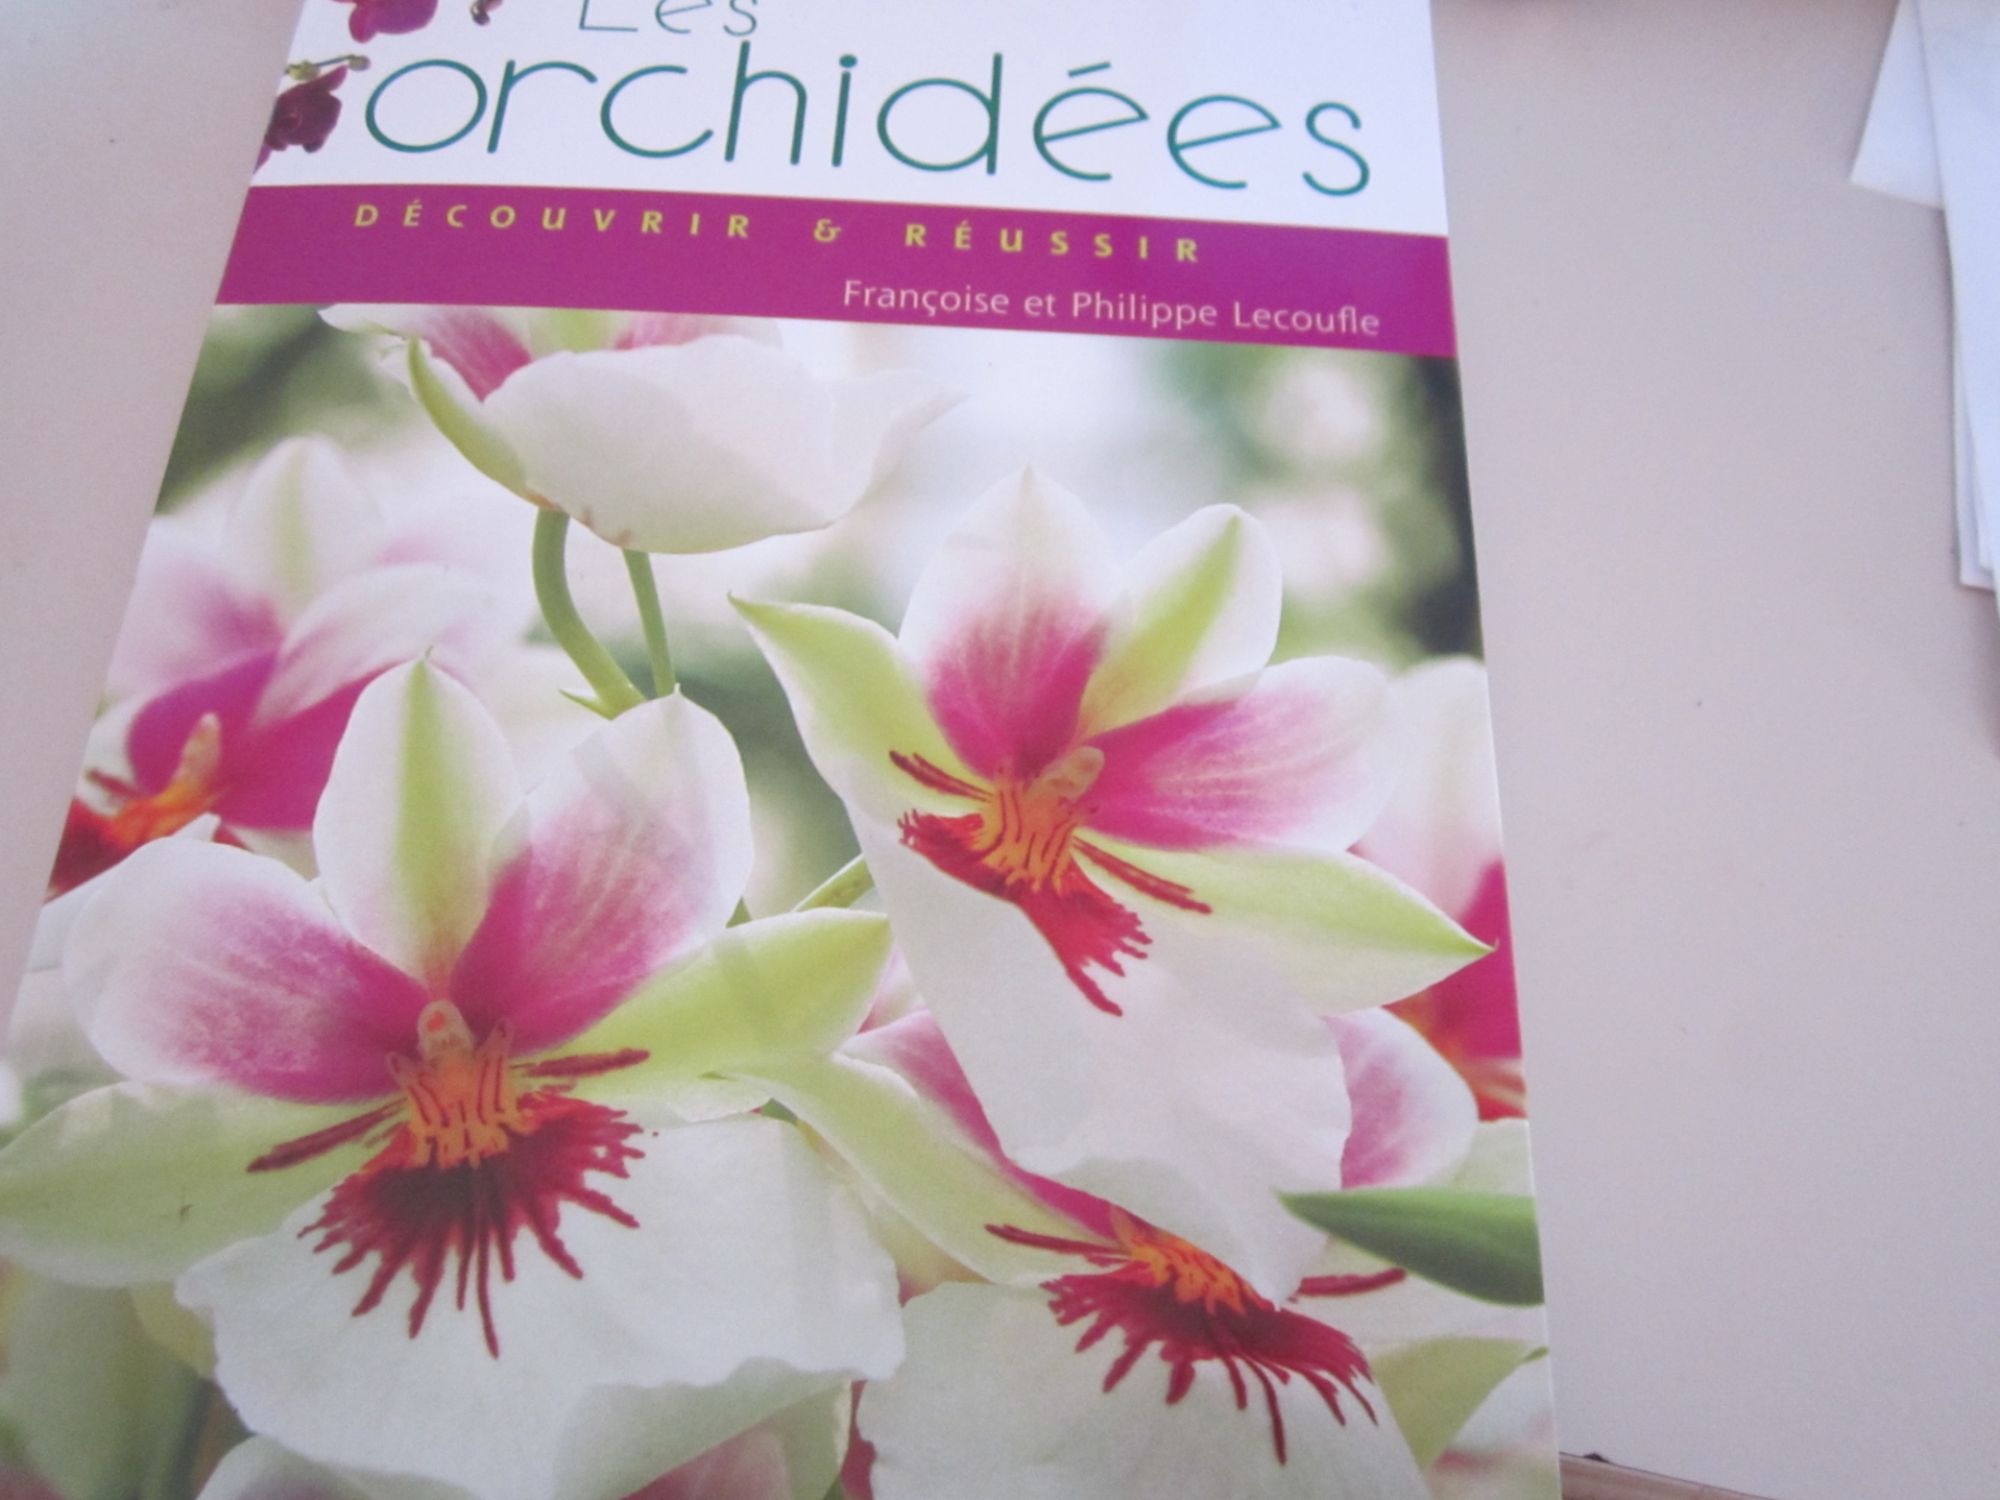 Découvrir et réussir Les orchidées